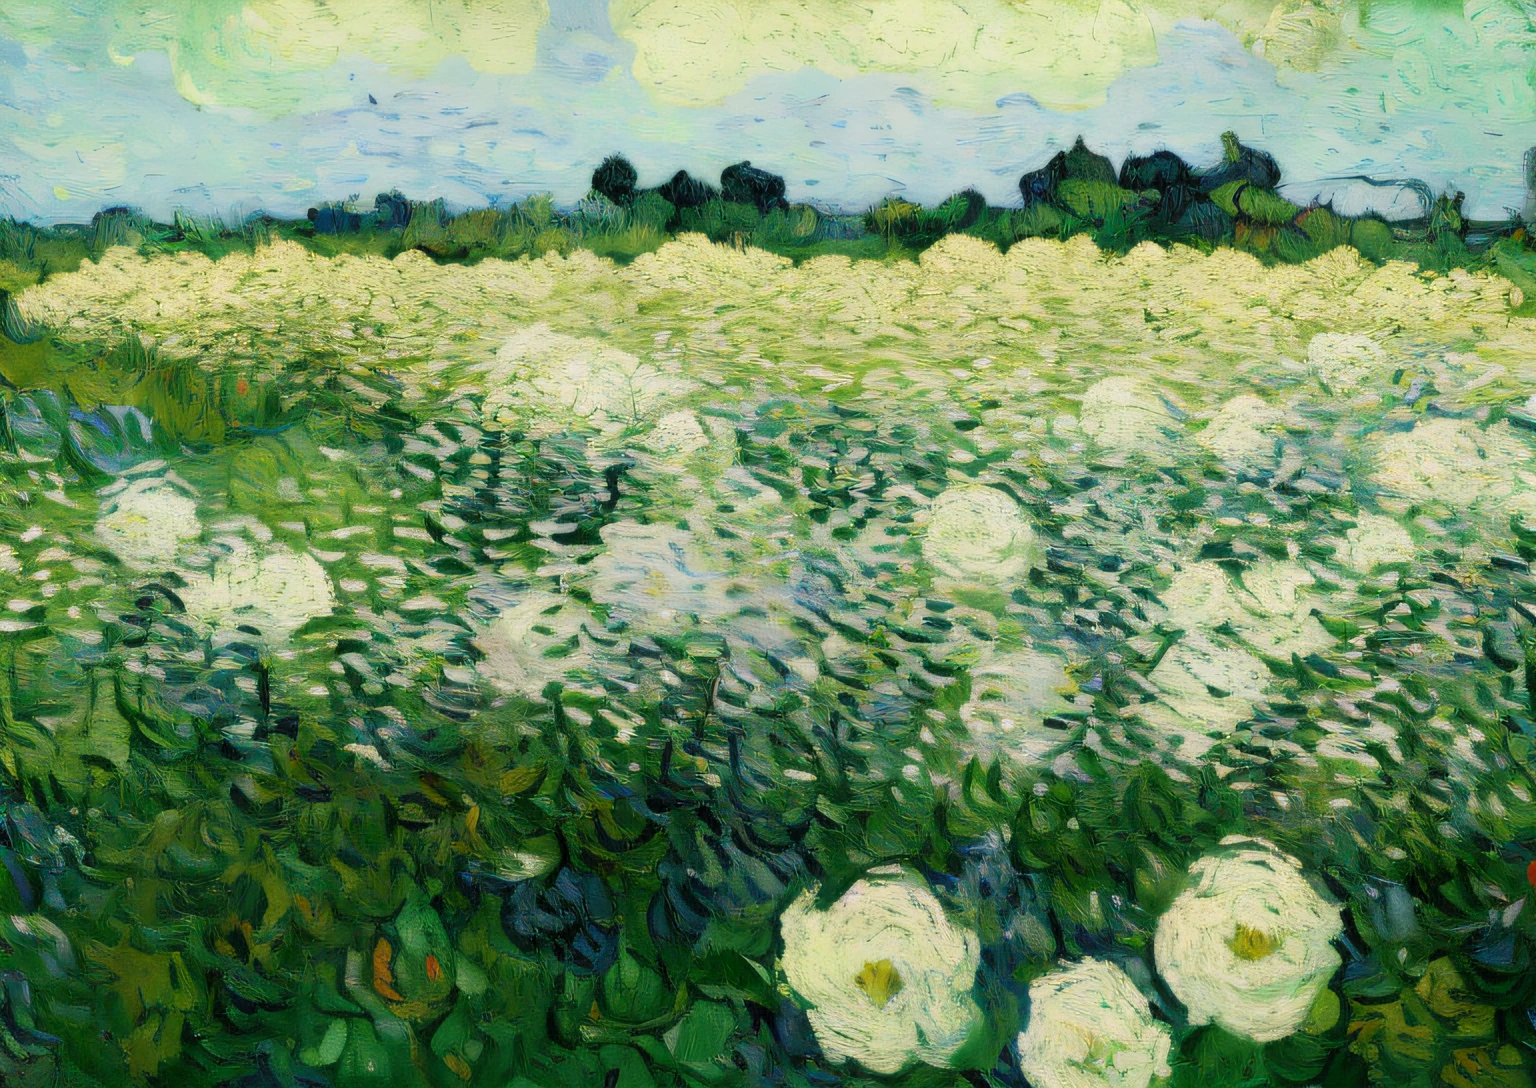 วาดดอกไม้สีขาวบนทุ่งสีเขียว，มีนกบินผ่านไป, vincent ภาพวาดแวนโก๊ะ, ผู้เขียน：แวนโก๊ะ, ผู้เขียน：Vincent van Gogh, ภาพวาดแวนโก๊ะ, ผู้เขียน：สูงกว่า, ดอกสีขาว, ดอกไม้อยู่เบื้องหน้า, กุหลาบขาว, โพสต์อิมเพรสชั่นนิสต์, ได้รับความอนุเคราะห์จากกระทรวงศิลปะสมัยใหม่, ปี 1506, โพสต์อิมเพรสชั่นนิสต์, โพสต์อิมเพรสชั่นนิสต์